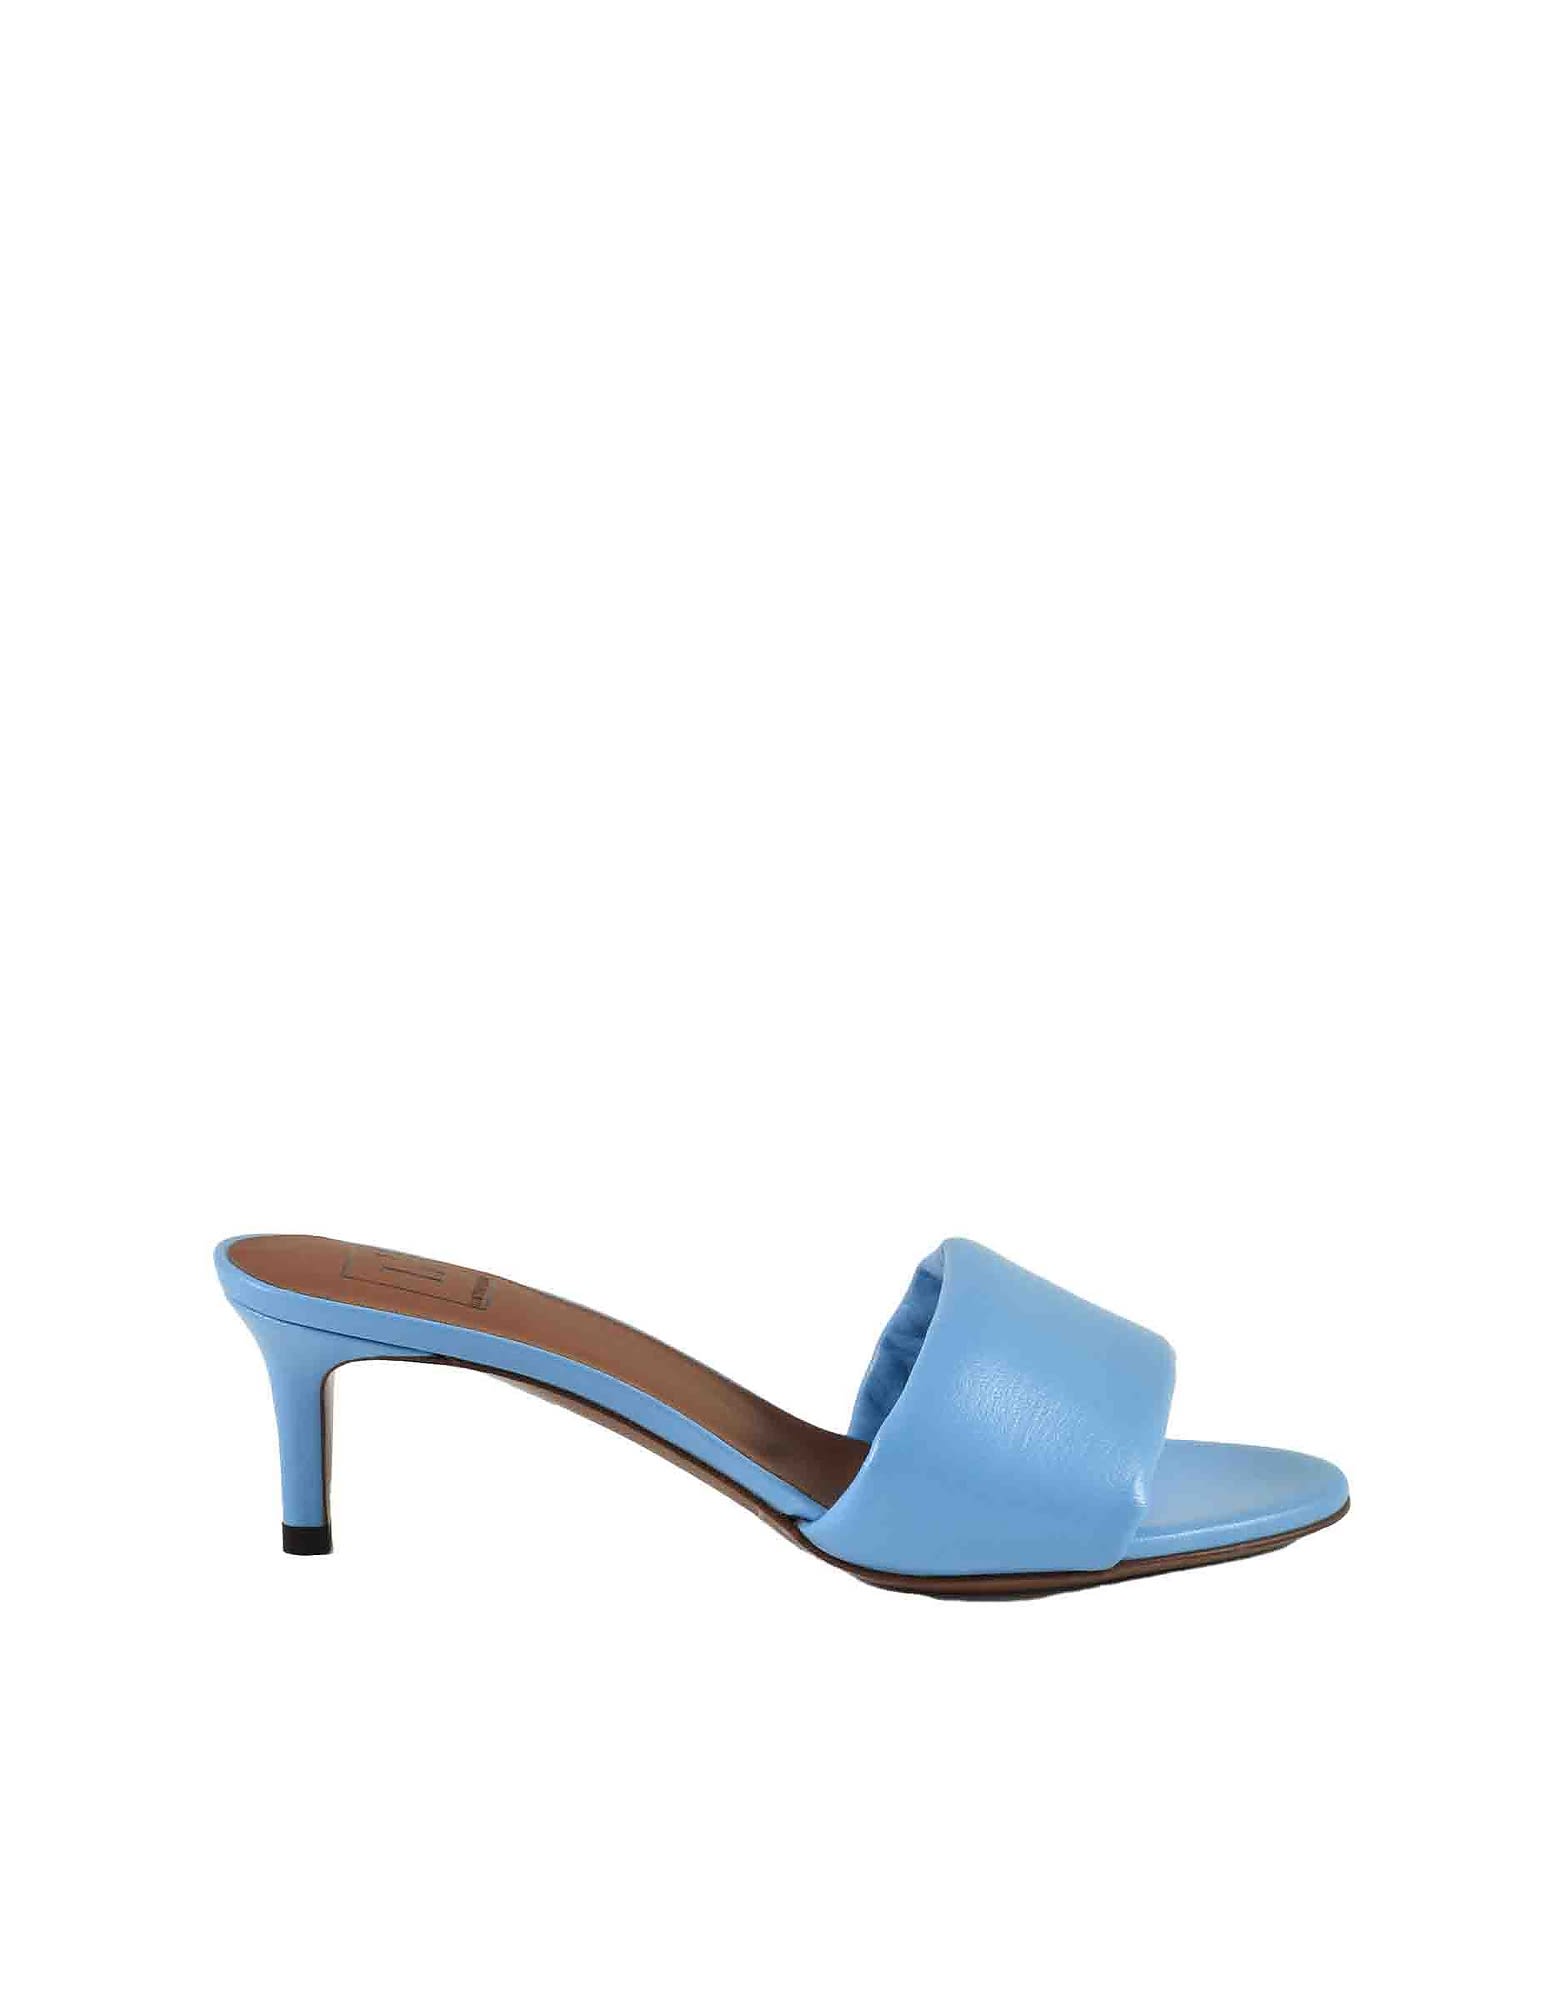 L'Autre Chose Womens Sky Blue Sandals